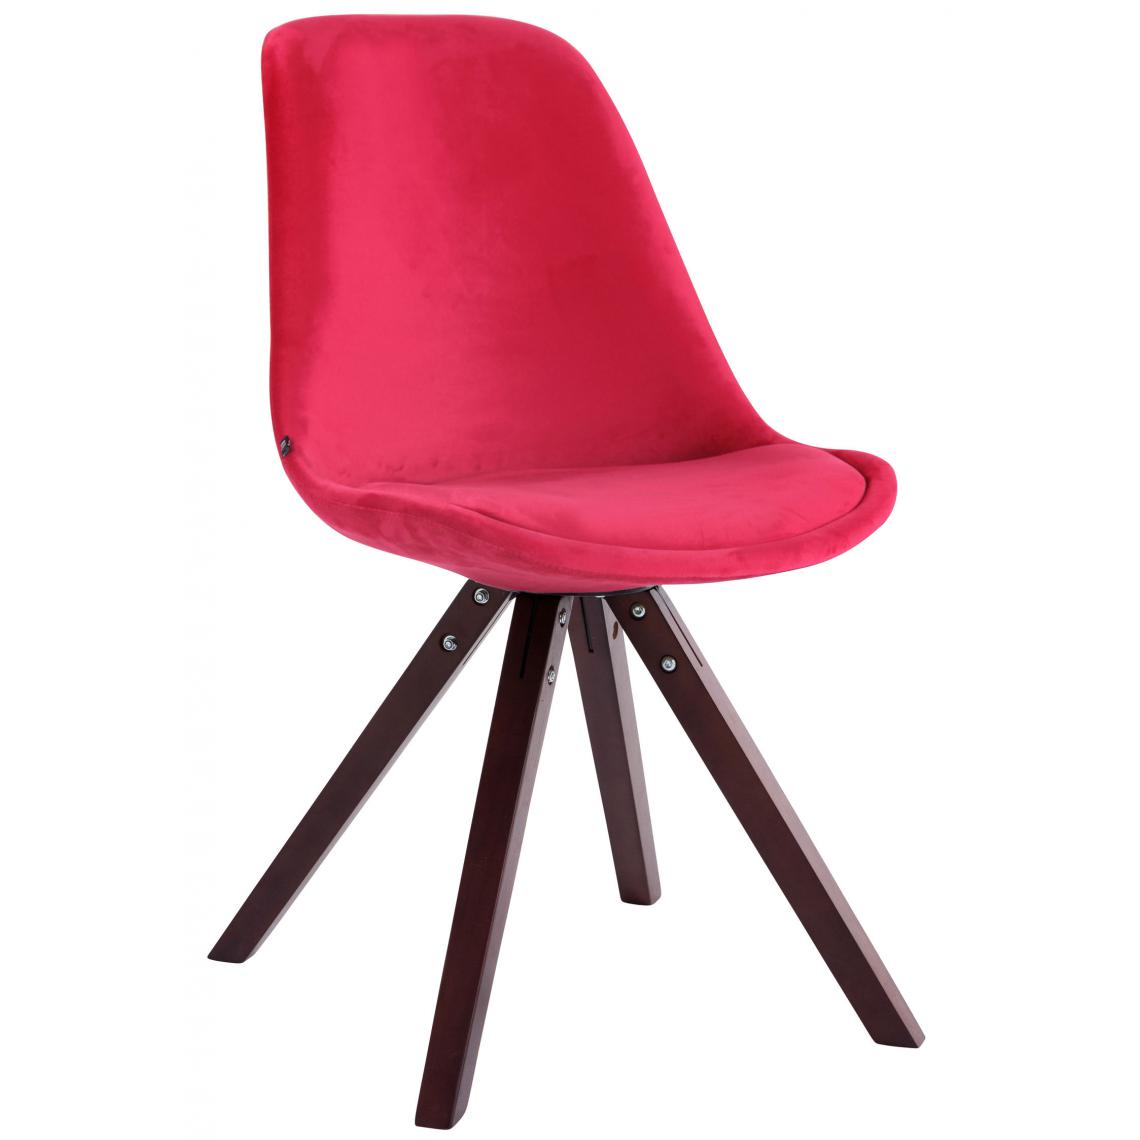 Icaverne - Splendide Chaise visiteur Katmandou velours carré cappuccino (chêne) couleur rouge - Chaises